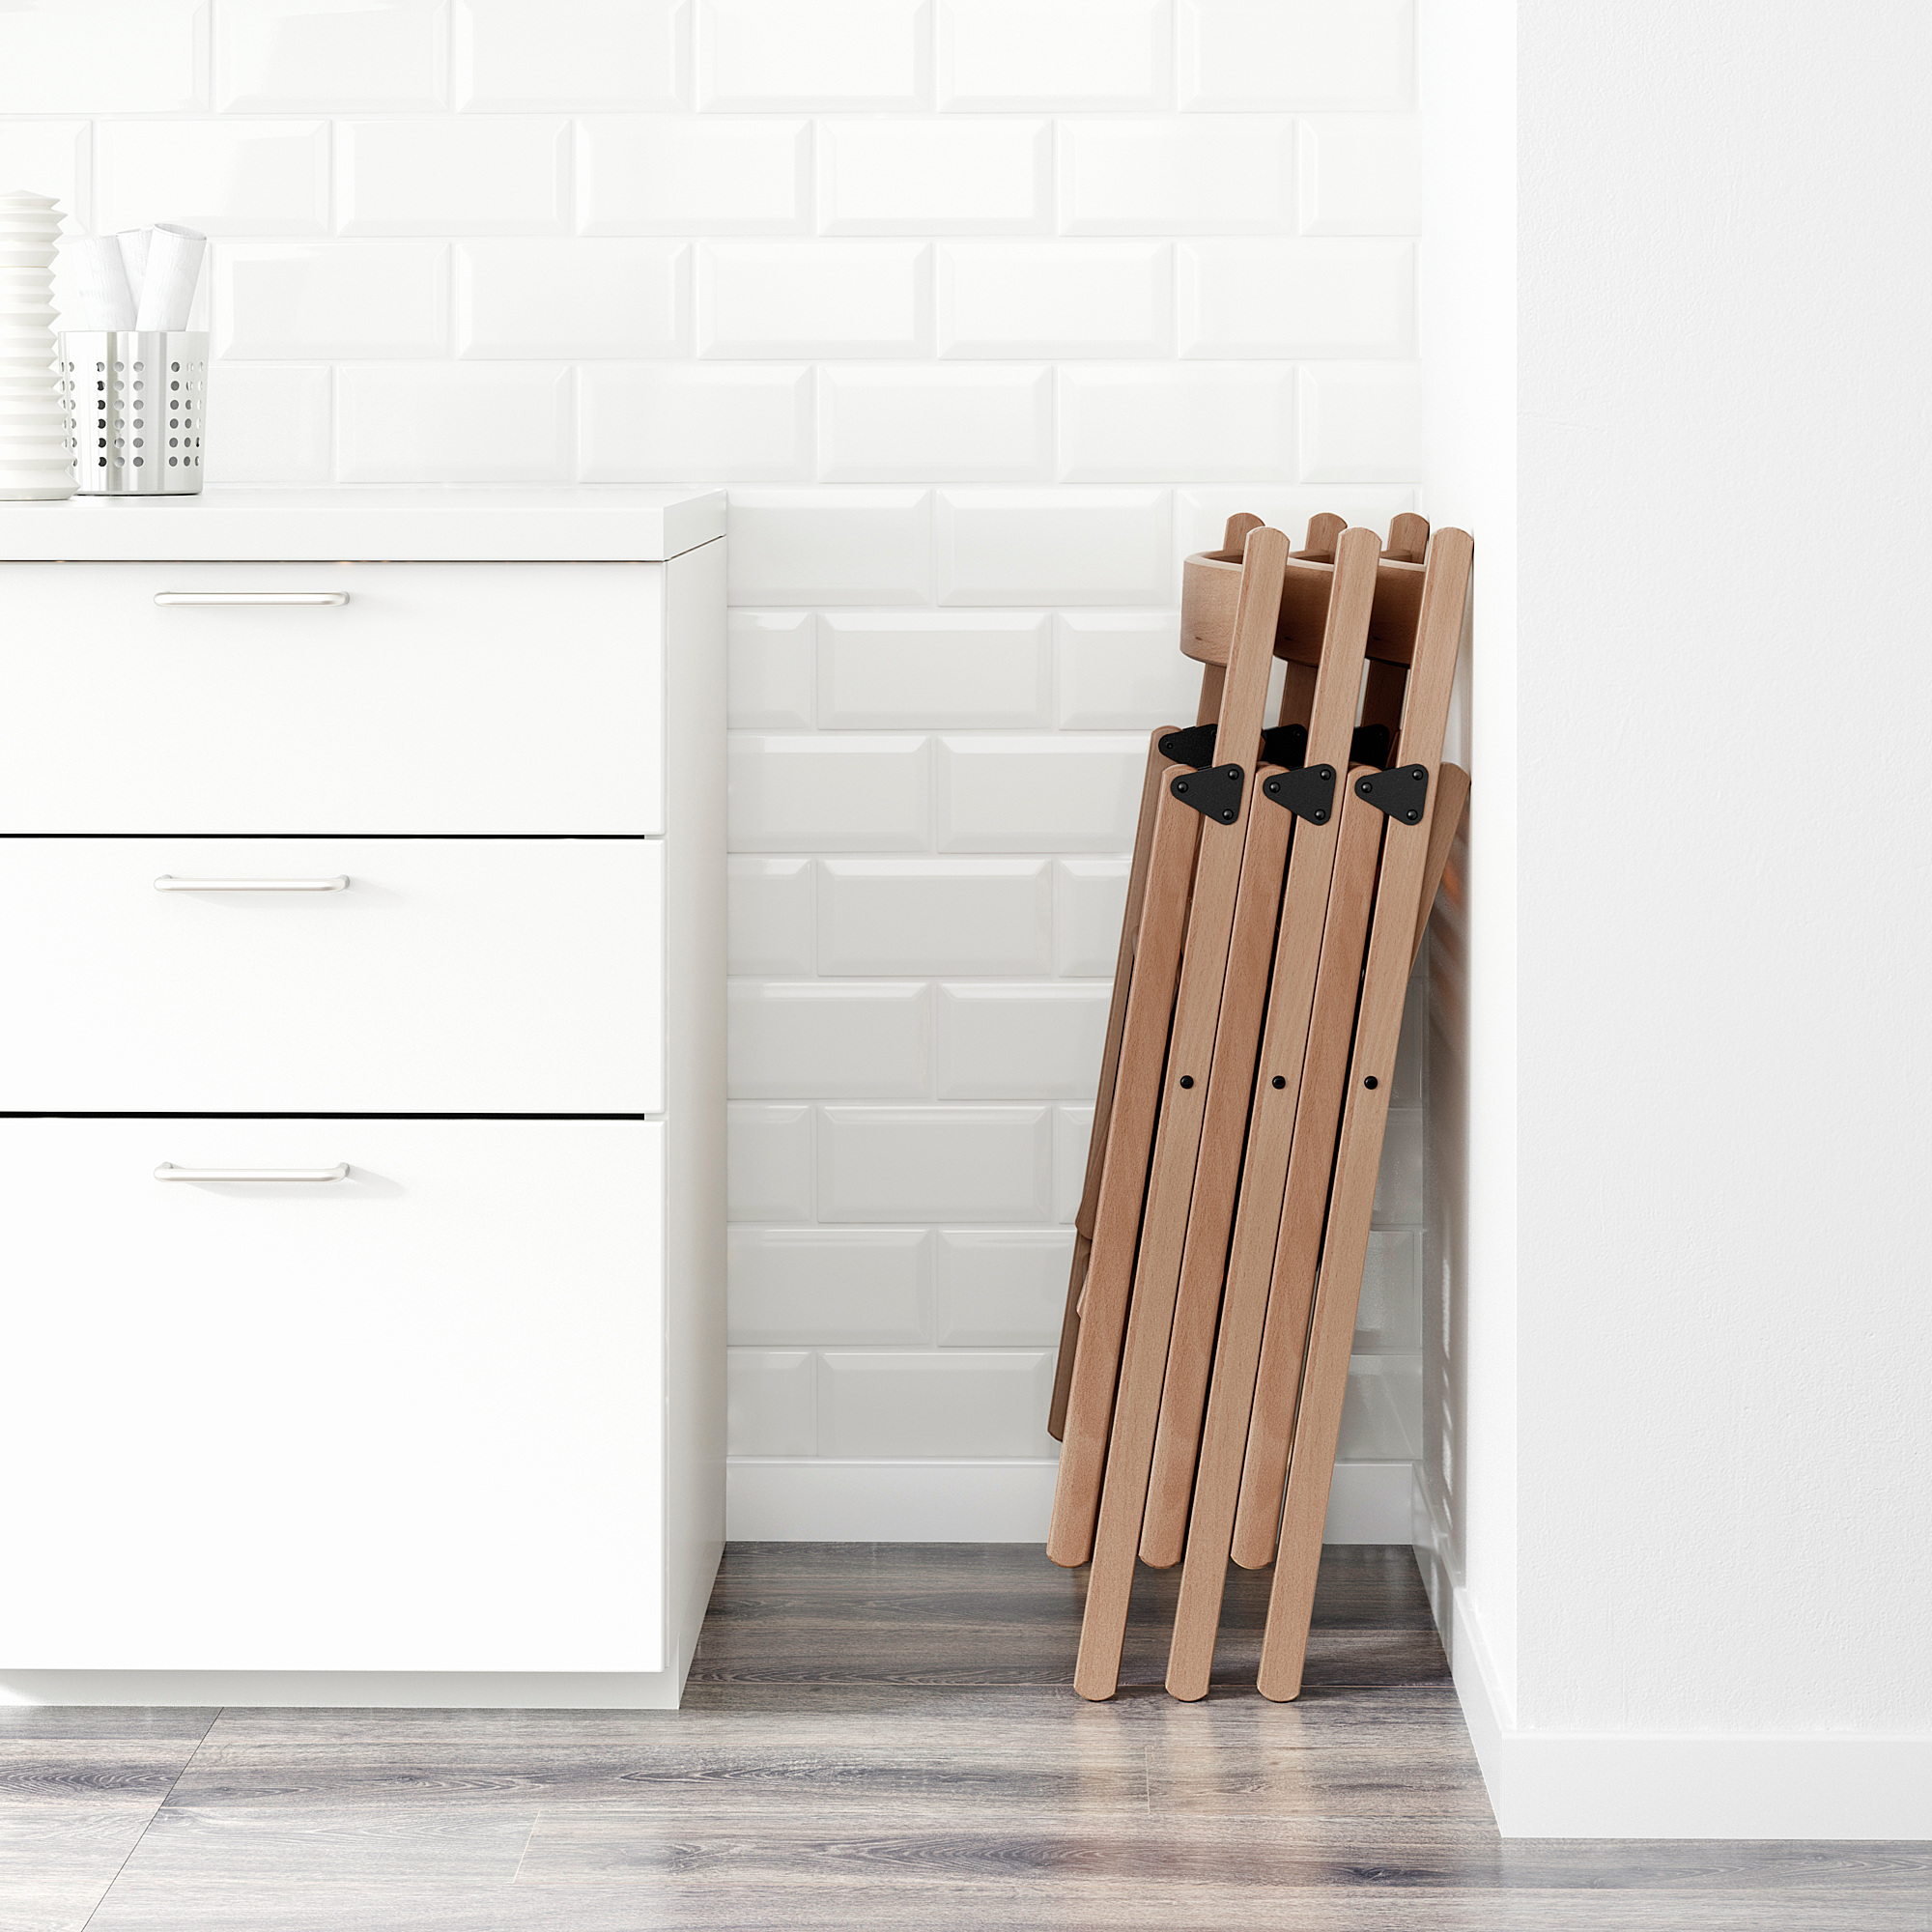 TERJE kursi  lipat  kayu  beech IKEA  Indonesia